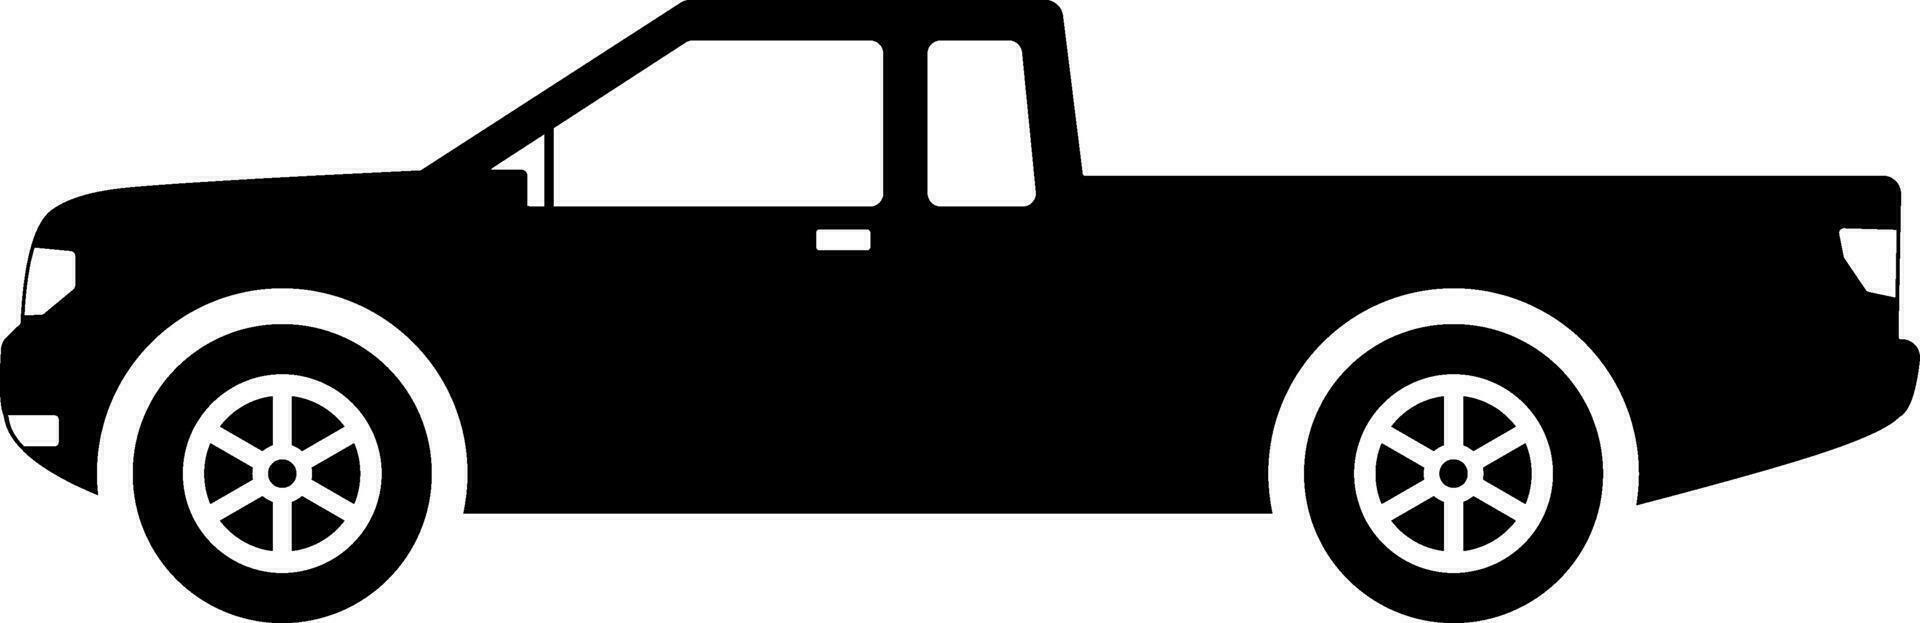 ramasser voiture icône vecteur. campagne livraison voiture silhouette pour icône, symbole et signe. ramasser voiture pour transport, expédition, livraison, paquet ou transit vecteur